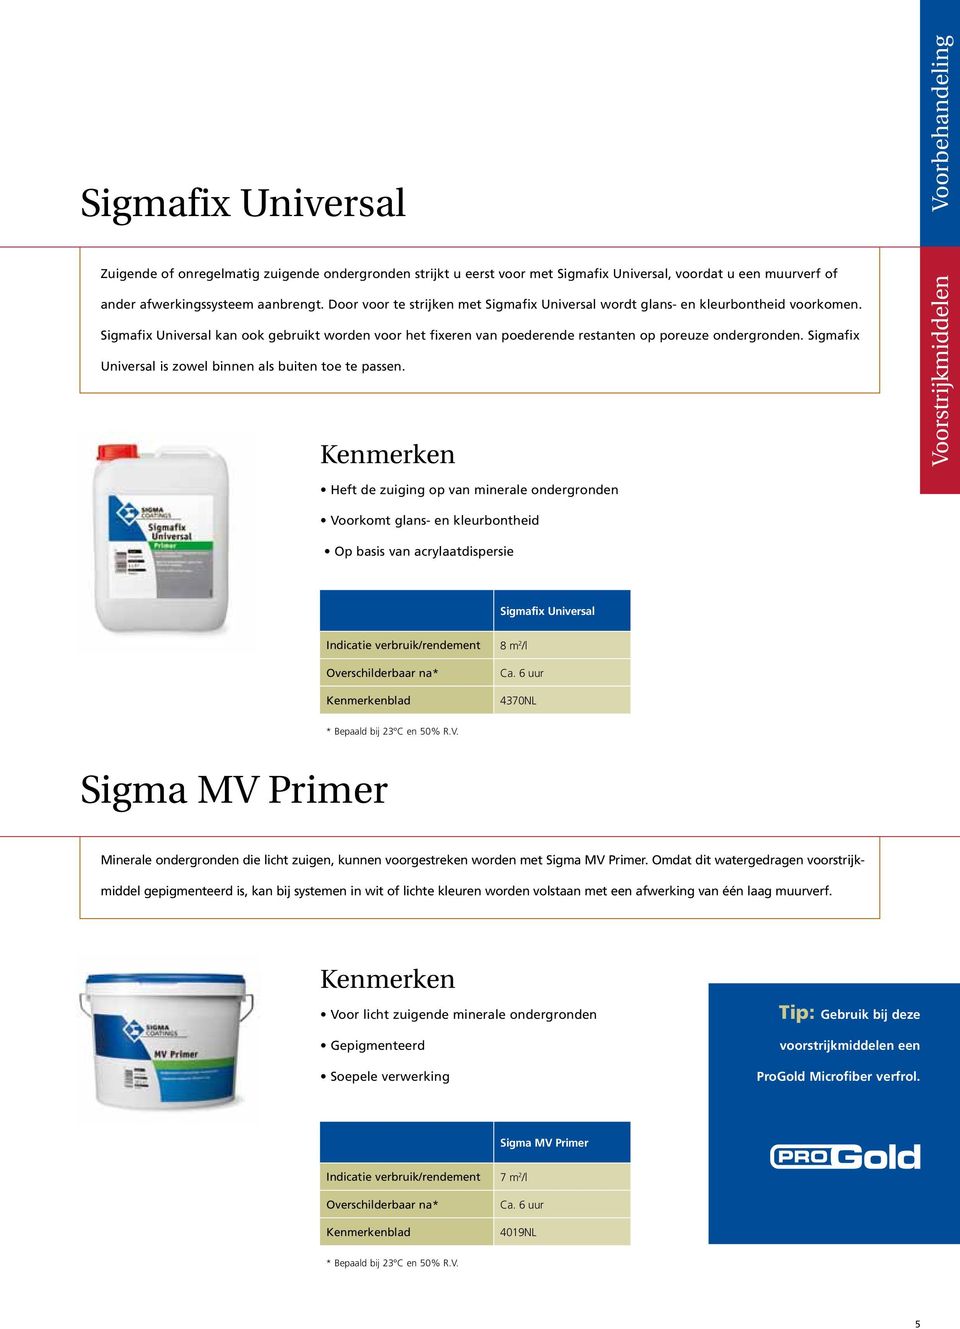 Sigmafix Universal is zowel binnen als buiten toe te passen.